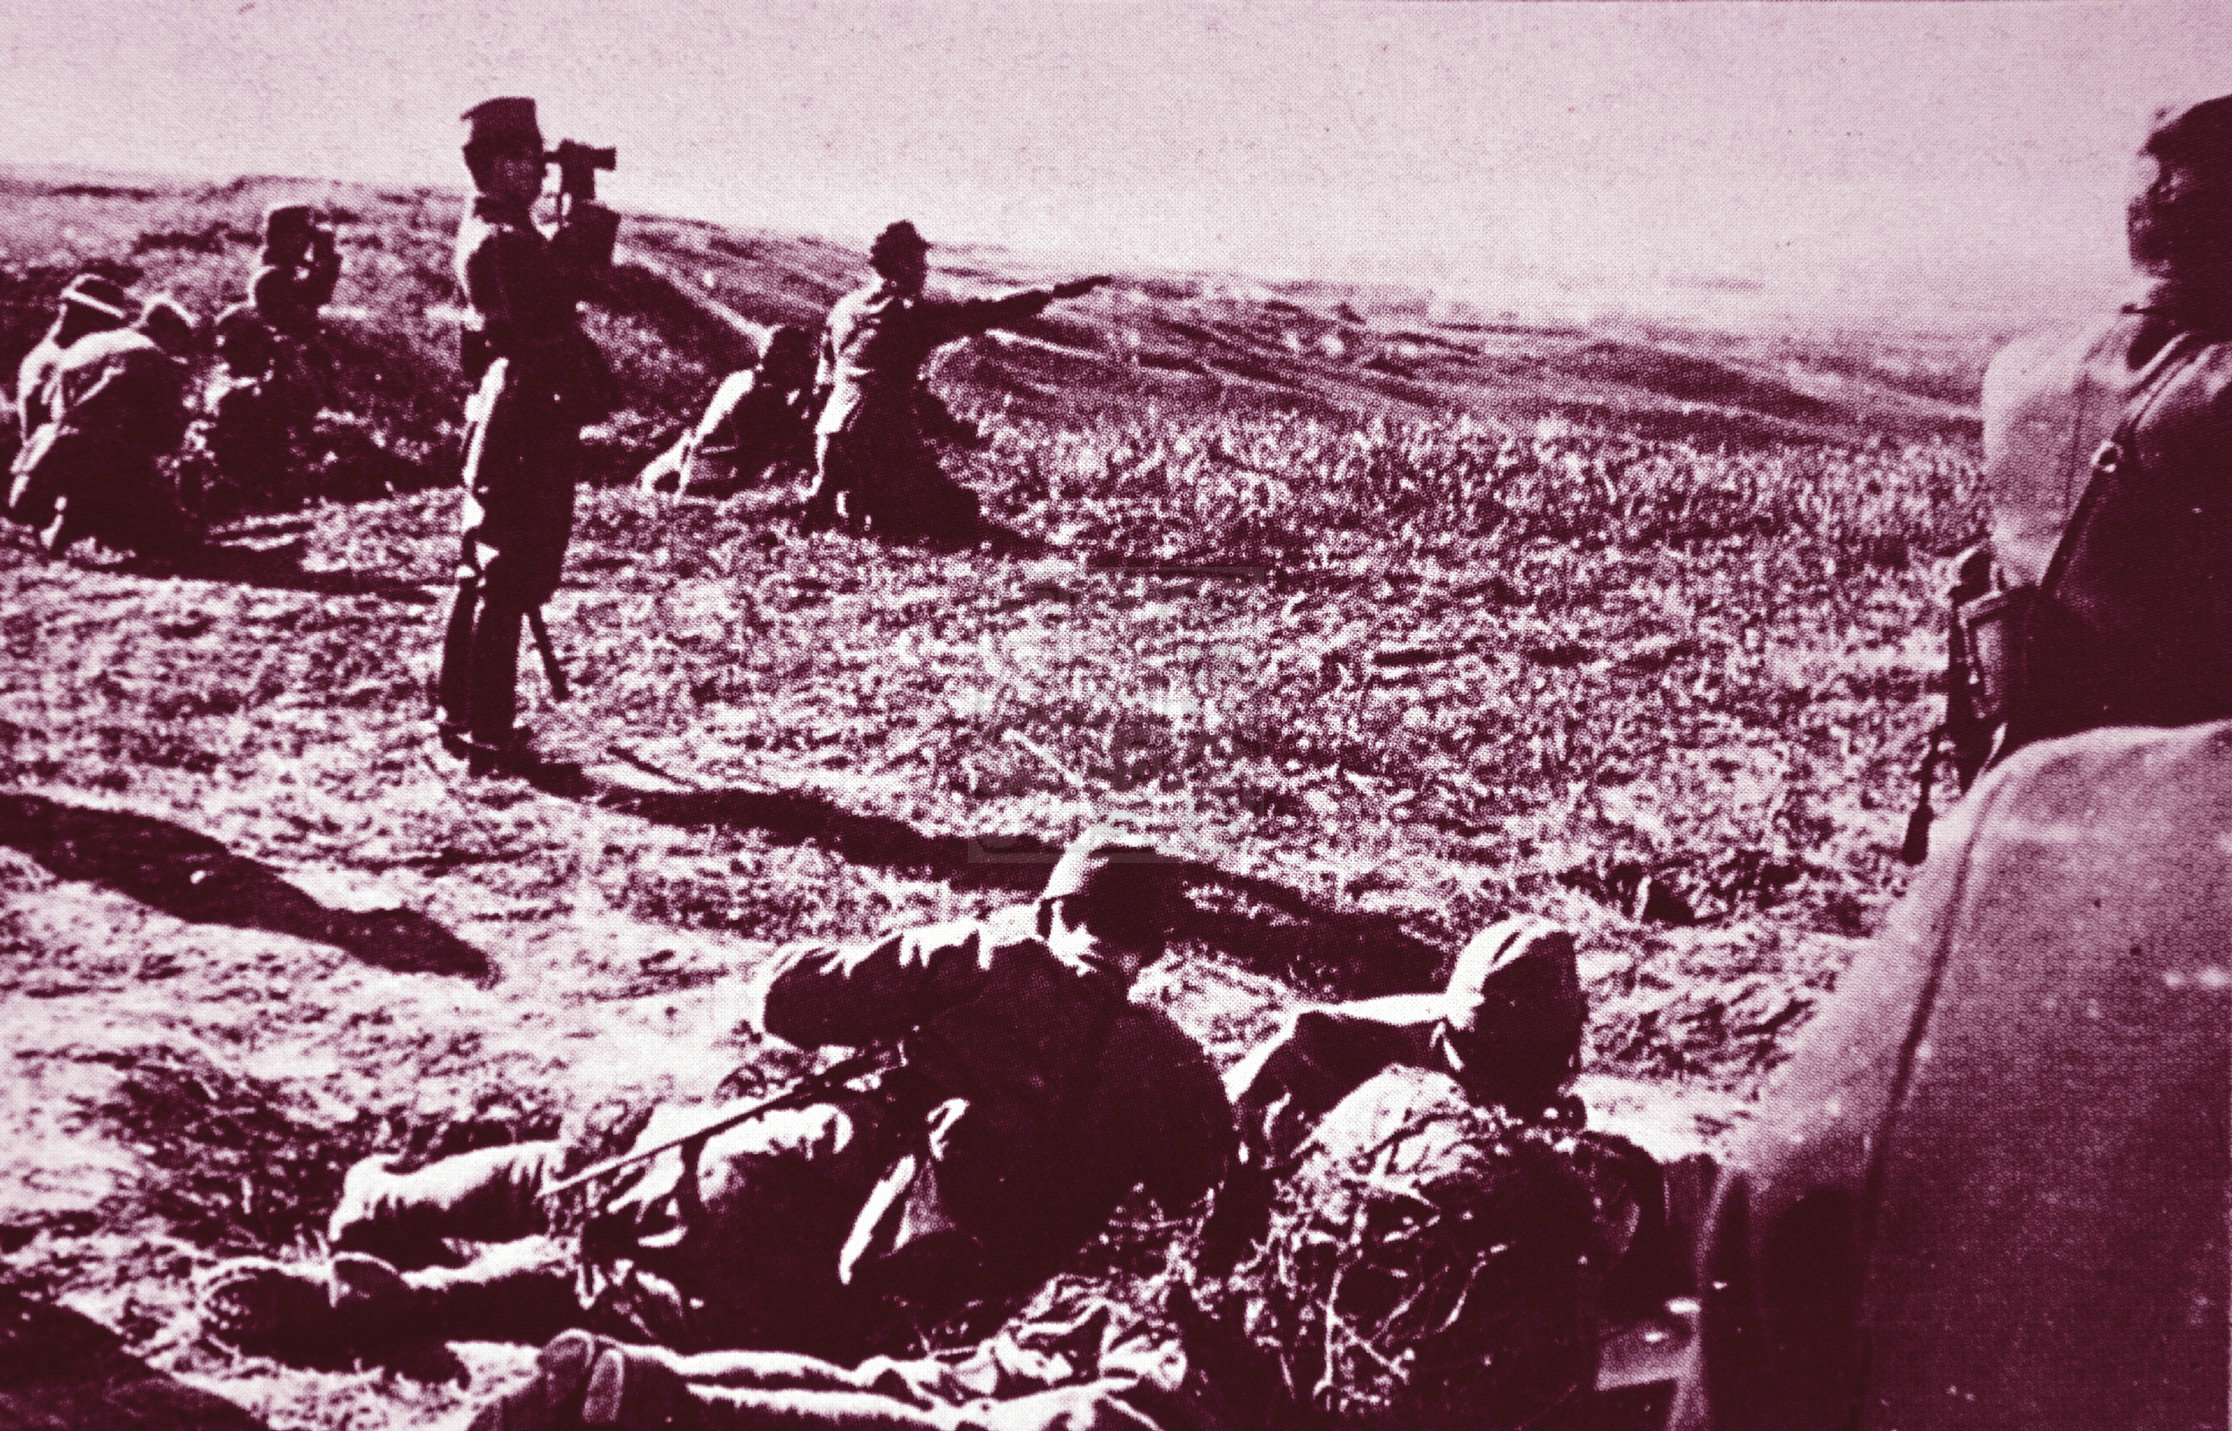 鬼子上山:原始照片展示山西山区大扫荡中的日军